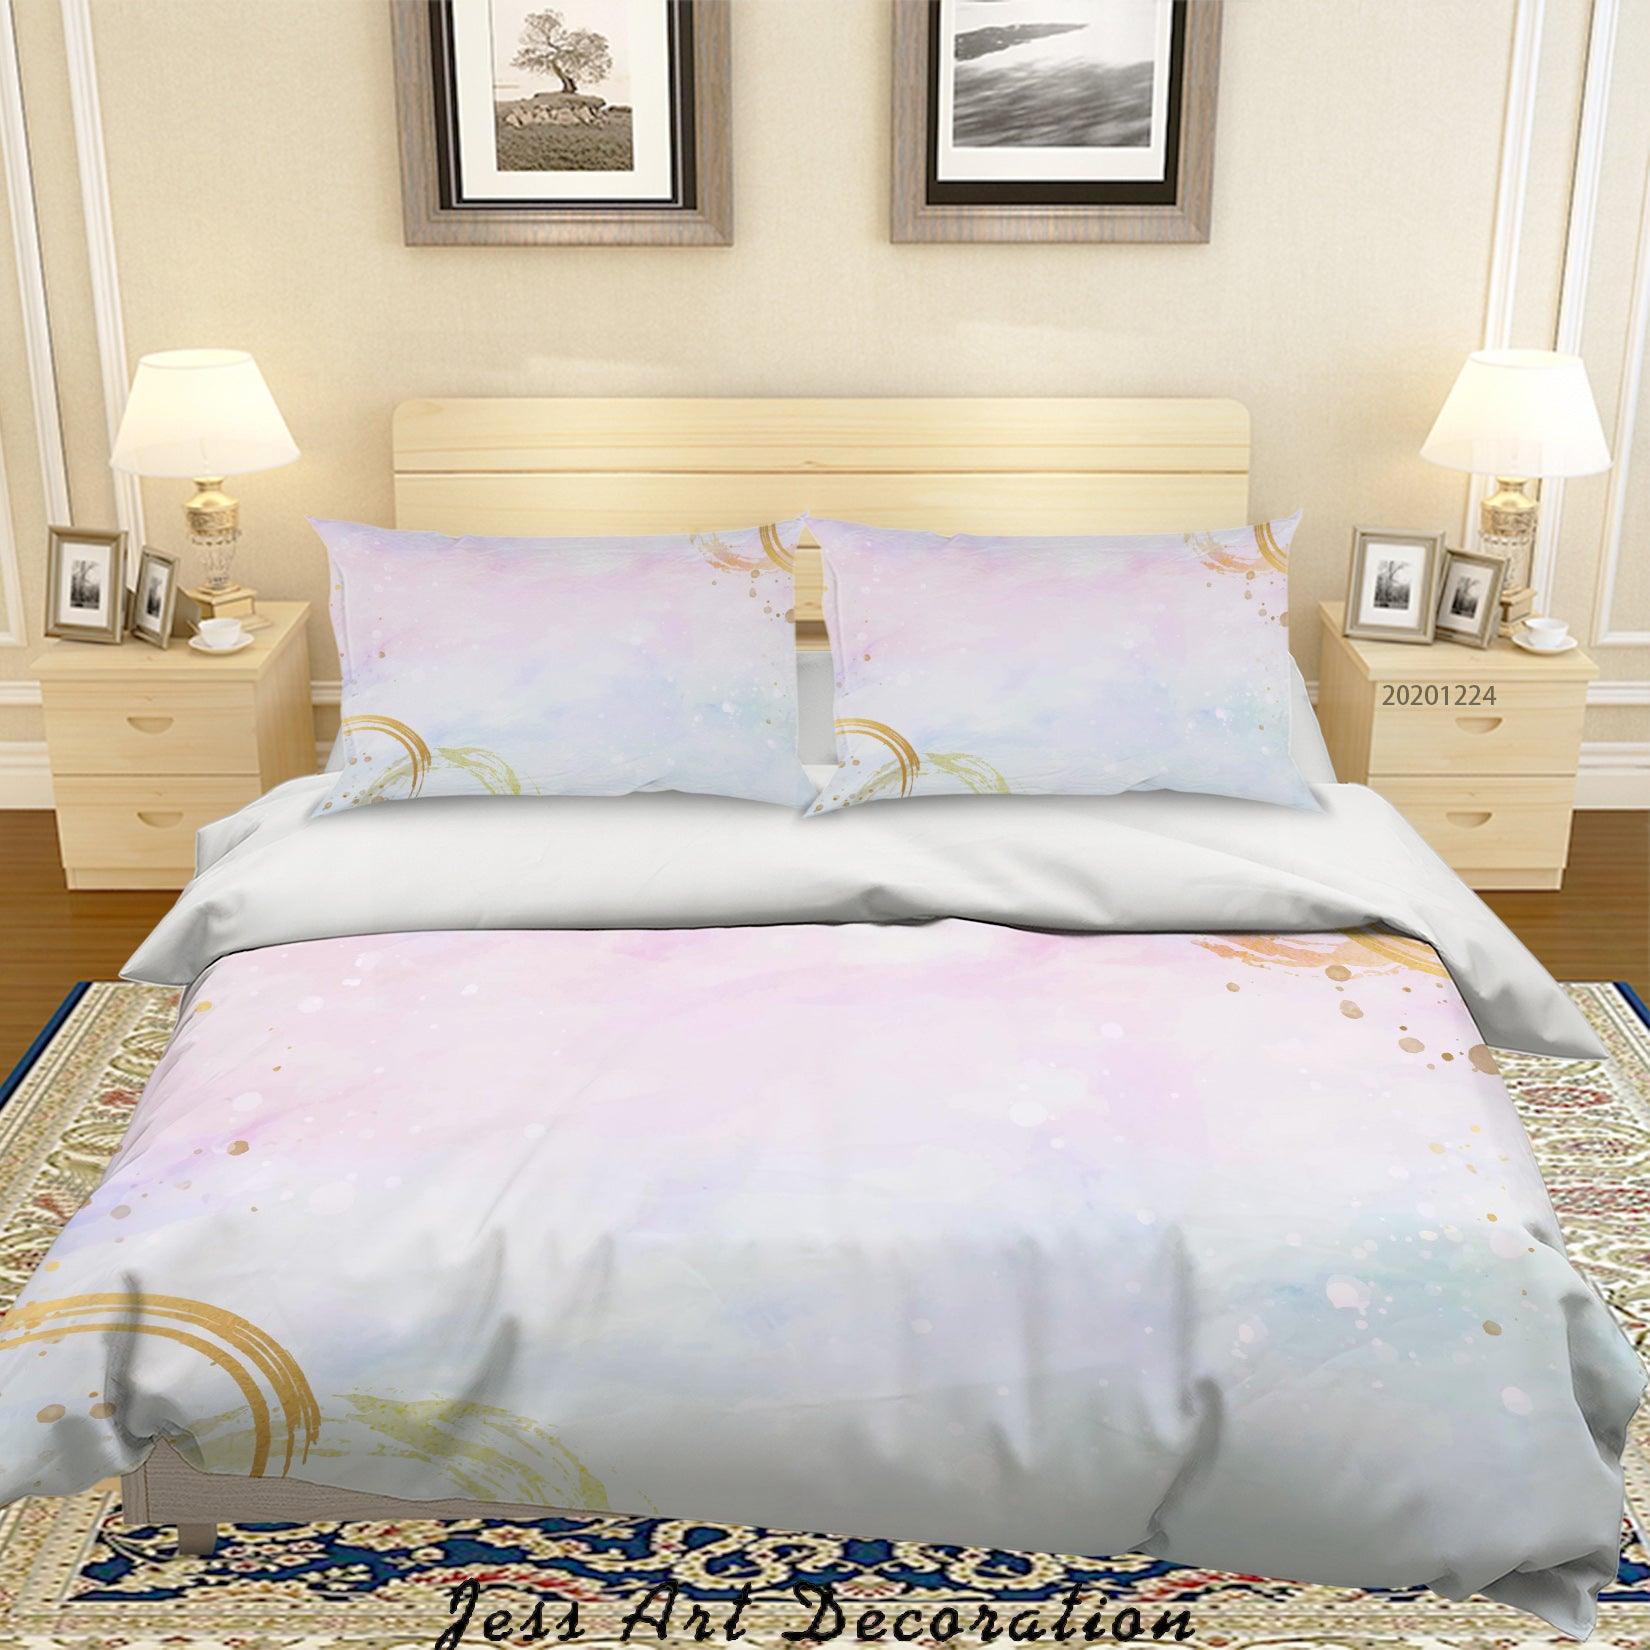 3D Watercolor Golden Leaf Quilt Cover Set Bedding Set Duvet Cover Pillowcases 167 LQH- Jess Art Decoration